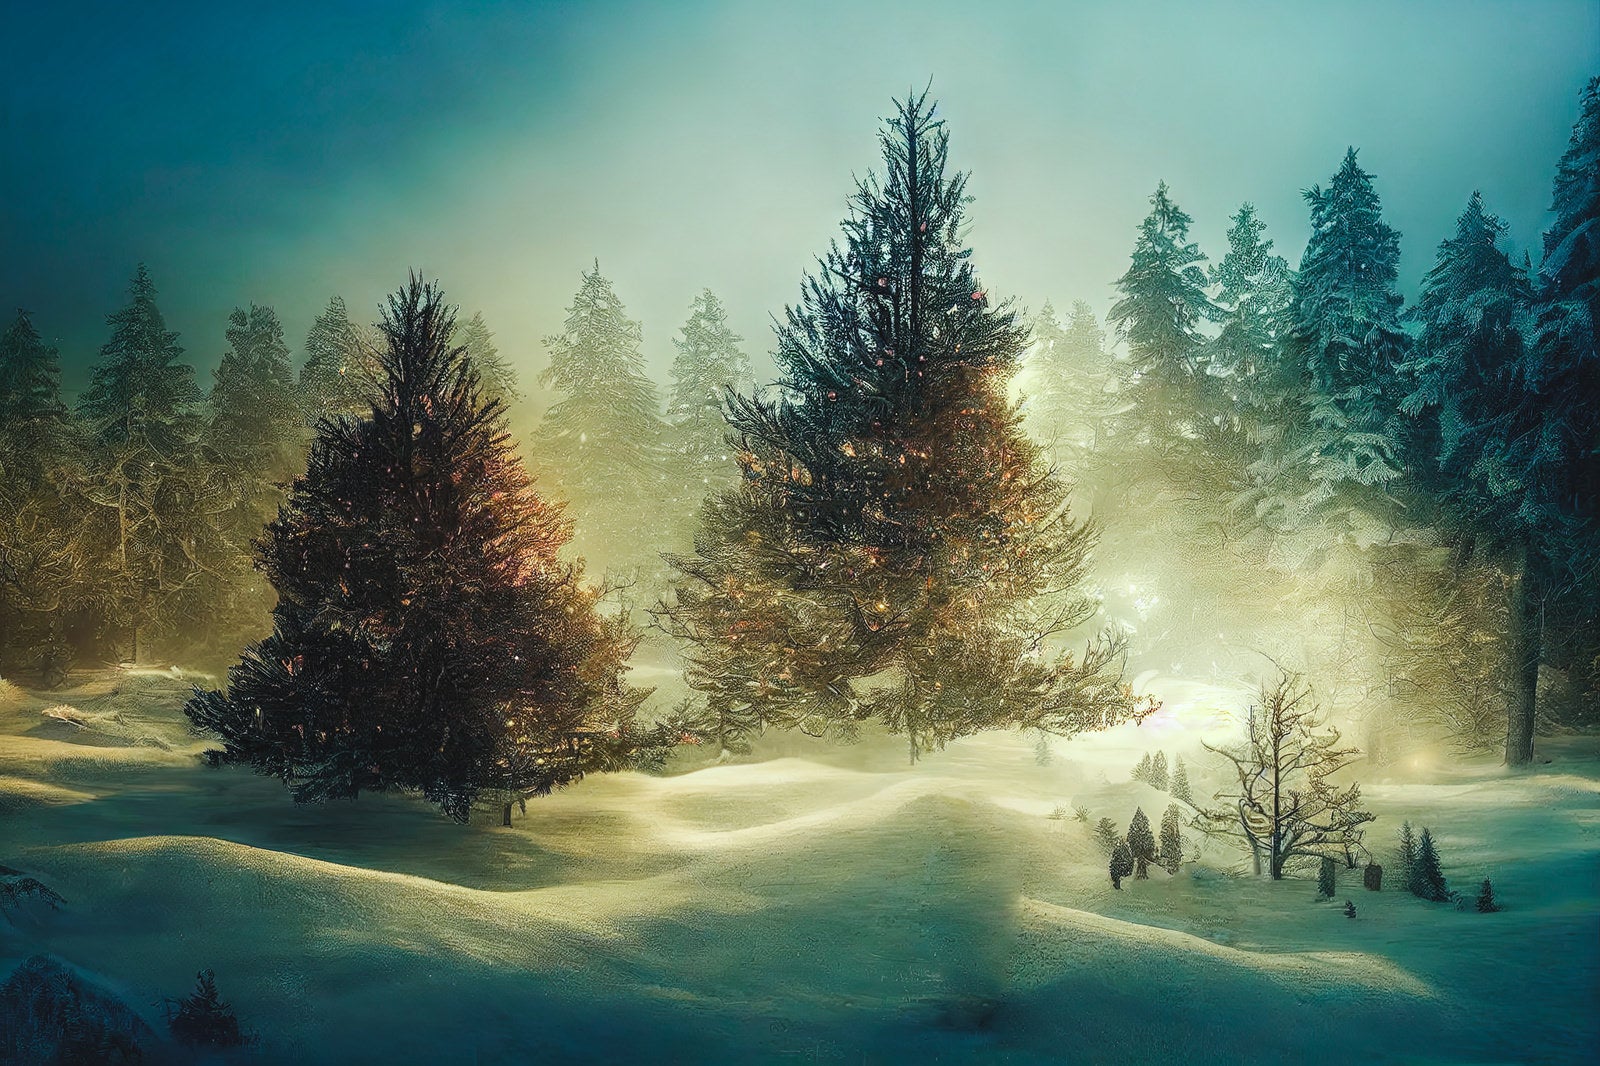 「大きなモミの木と雪原」の写真